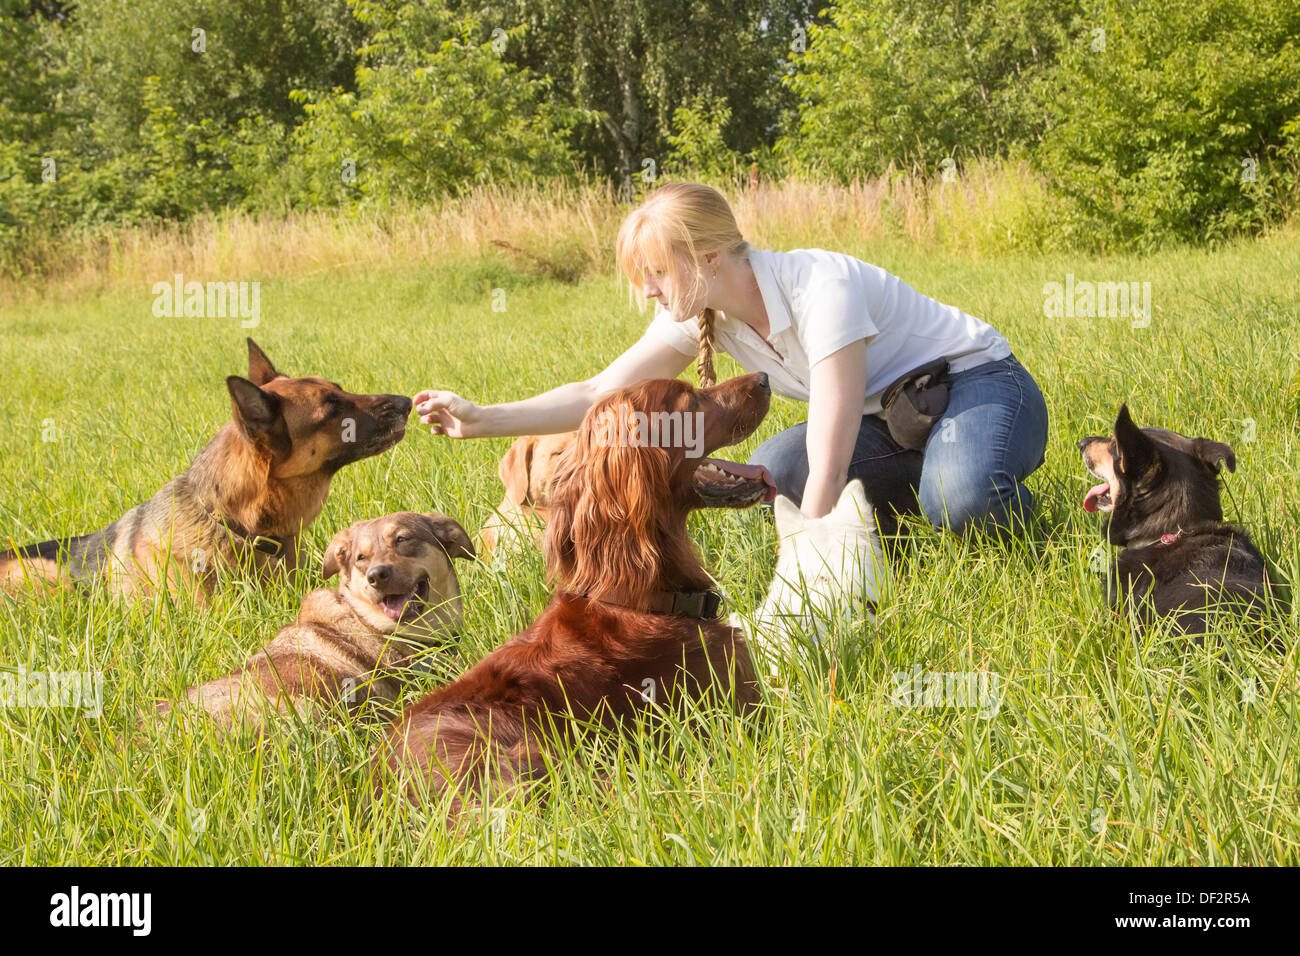 Entraîneur de chien femelle alimente un chien avec goodies après la formation Banque D'Images